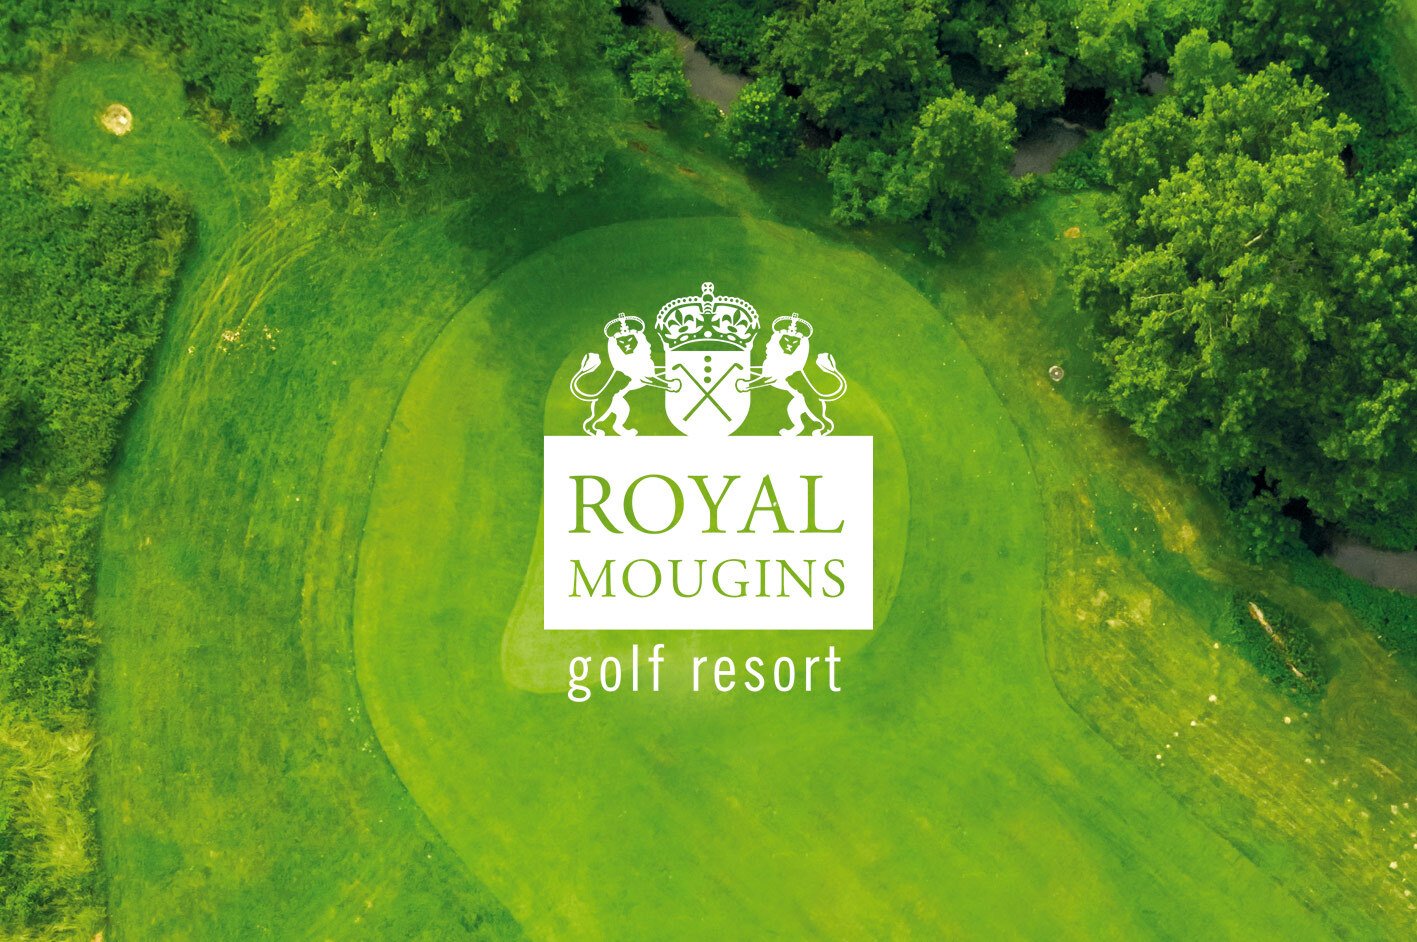 Access Base Sud travail sur le référencement du site internet du Royal Mougins Golf Resort situé à Mougins. Google Adwords